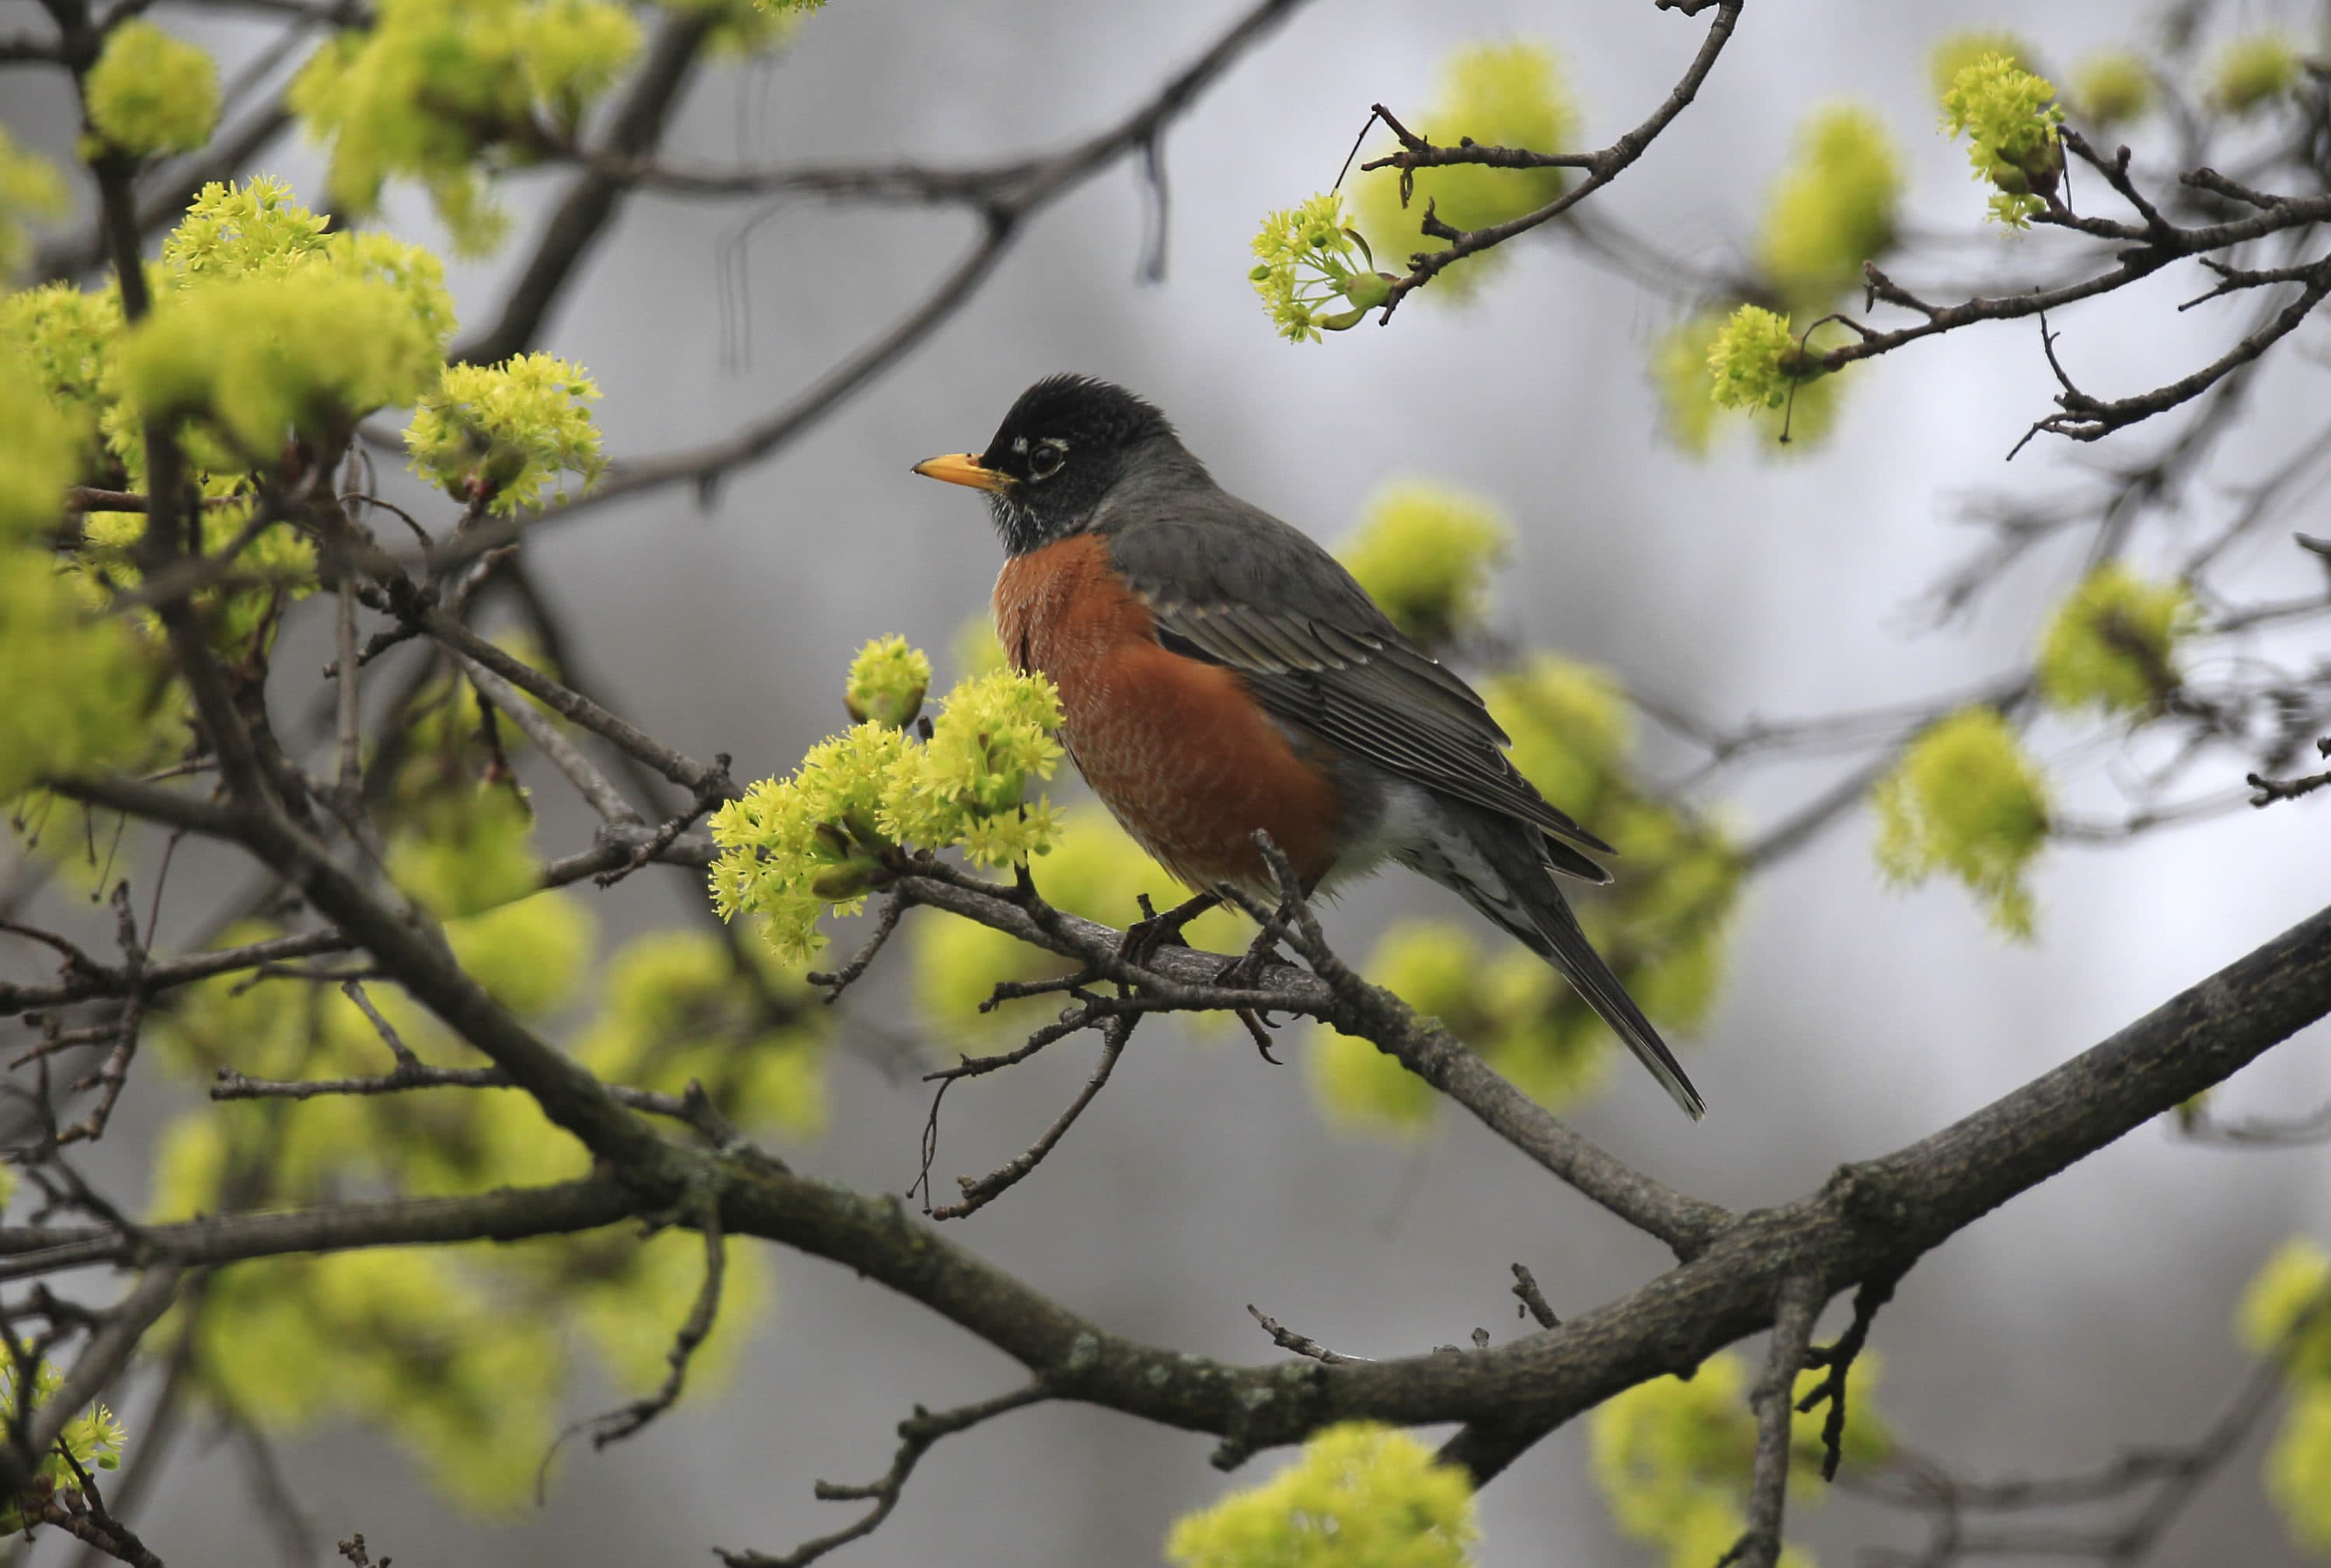 spring robin wallpaper